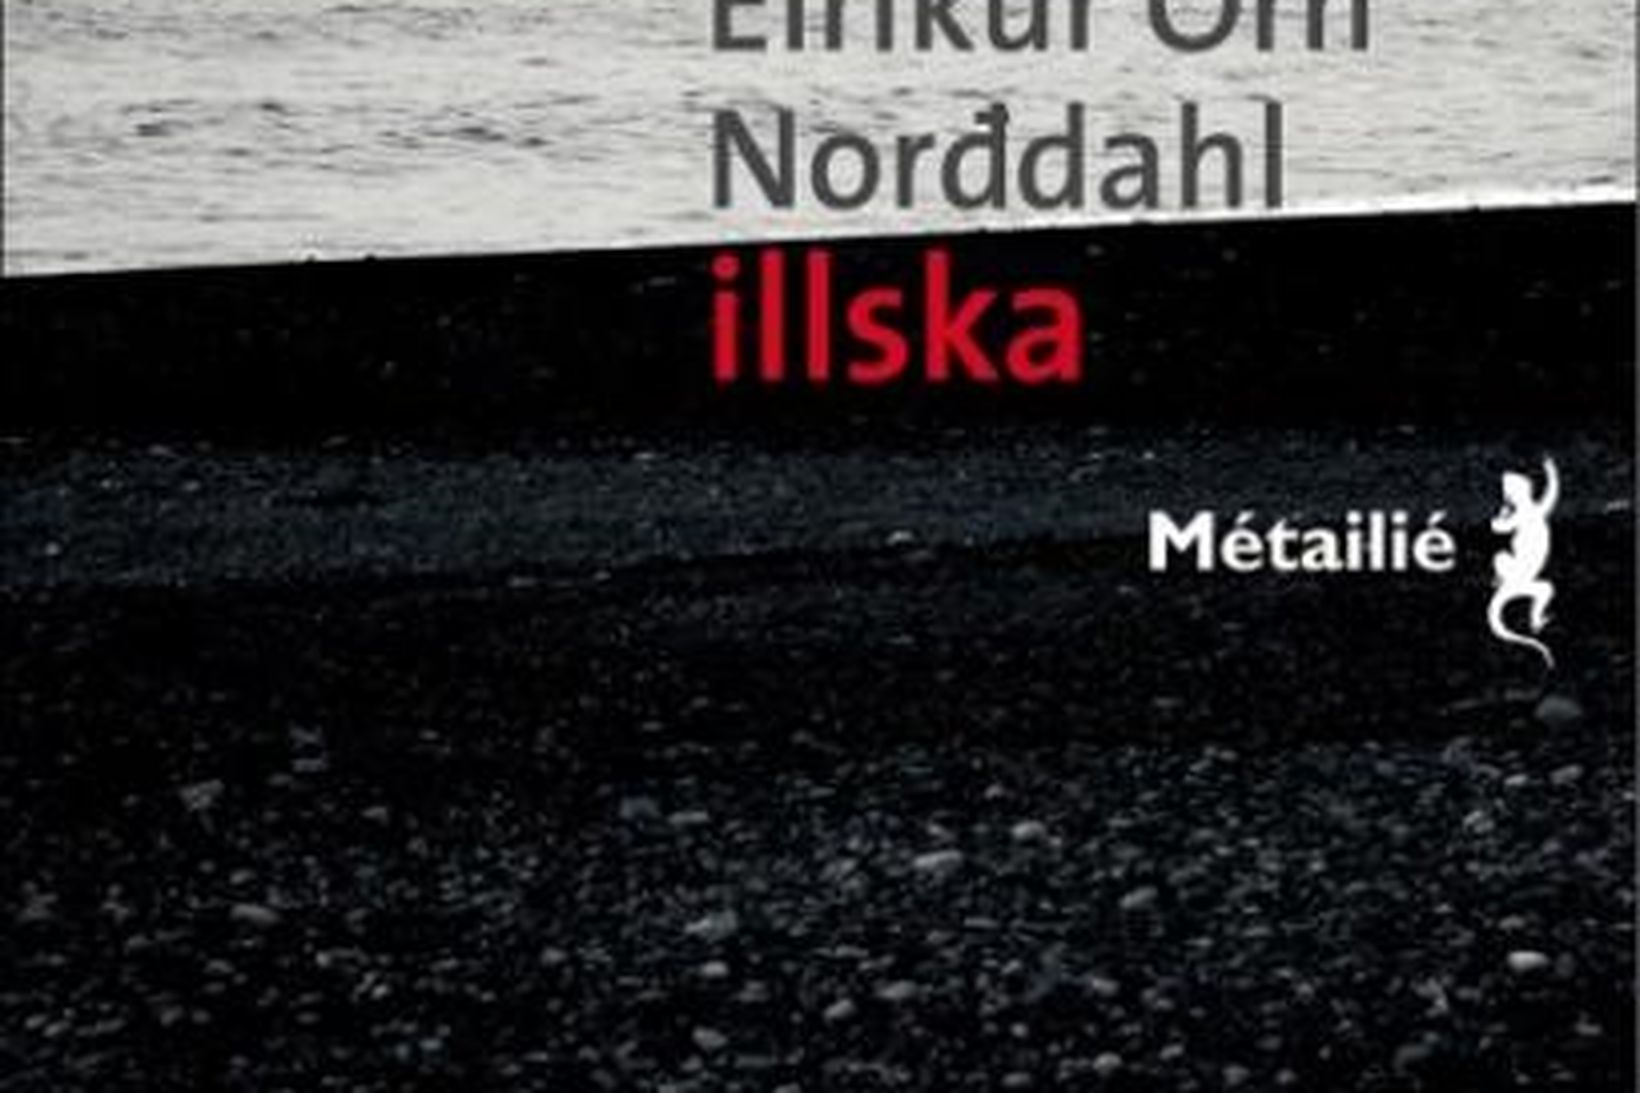 Illska eftir Eirík Örn Norðdahl sló í gegn þegar hún …